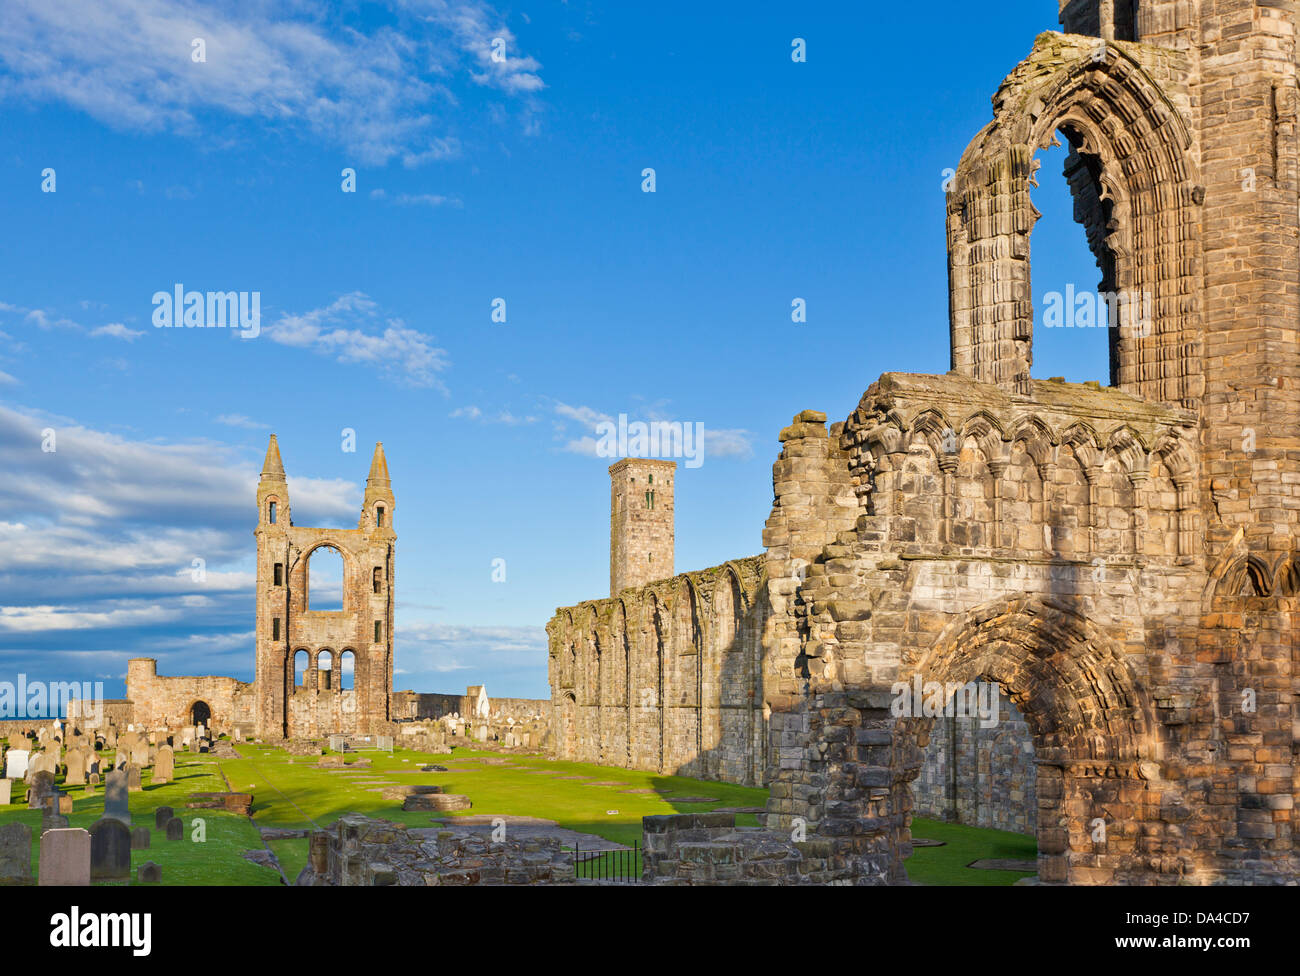 Ruines de la cathédrale St Andrews Royal Burgh of St Andrews Fife Scotland Royaume-Uni GB Europe Banque D'Images